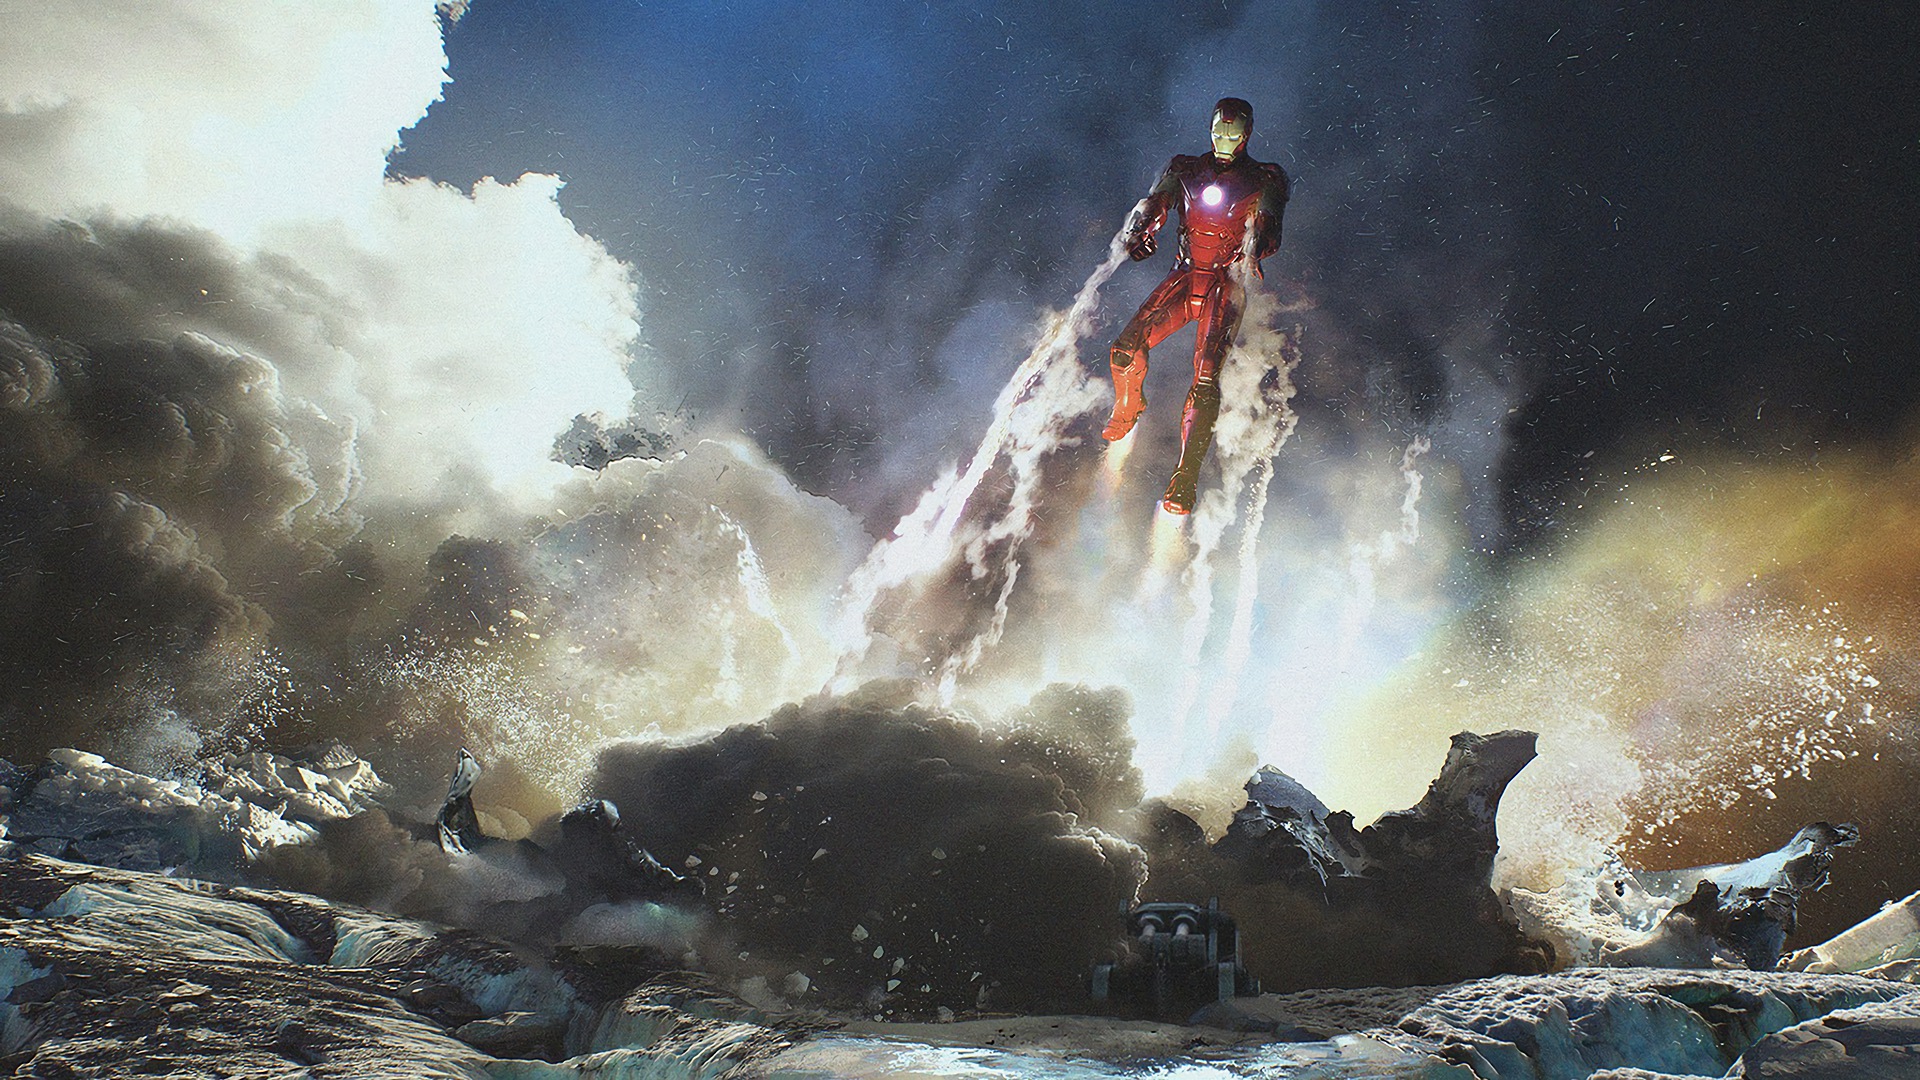 Hình nền Iron Man HD: Bạn yêu thích Siêu nhân Iron Man và muốn biến chiếc điện thoại của mình trở nên đặc biệt hơn? Đừng bỏ lỡ hình nền Iron Man HD đầy sắc nét và lôi cuốn. Với hình ảnh của Iron Man trực diện và sẵn sàng chiến đấu, bạn sẽ cảm thấy như mình đang trực tiếp đứng trước Siêu nhân Iron Man trong thế giới Marvel.